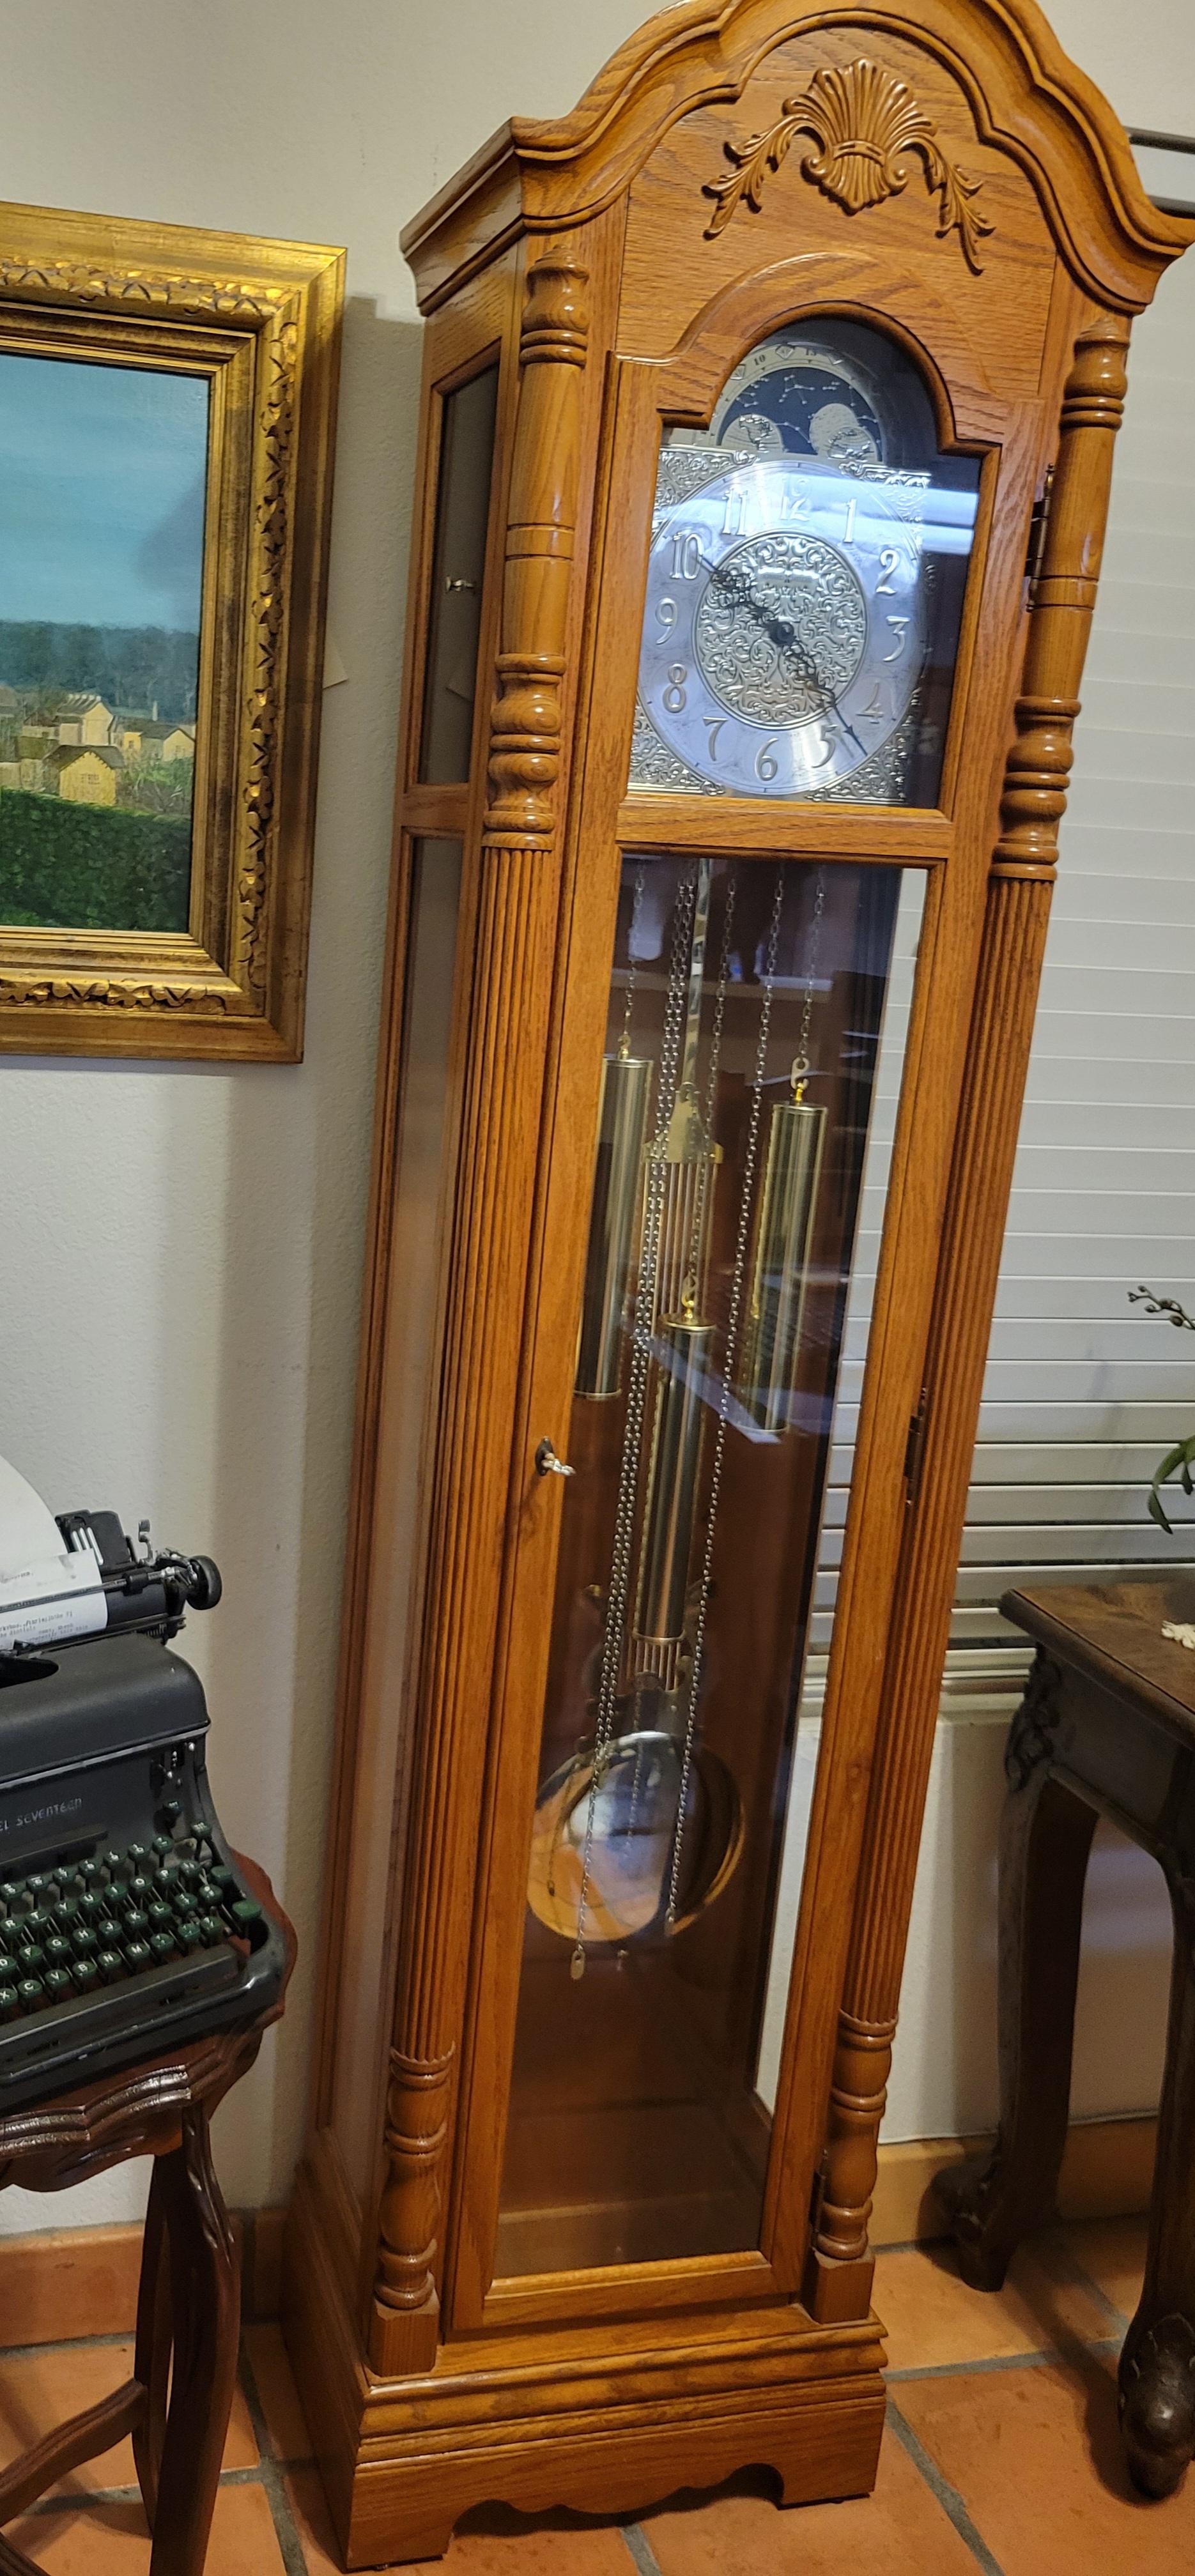 floor & grandfather clocks tempus fugit clock